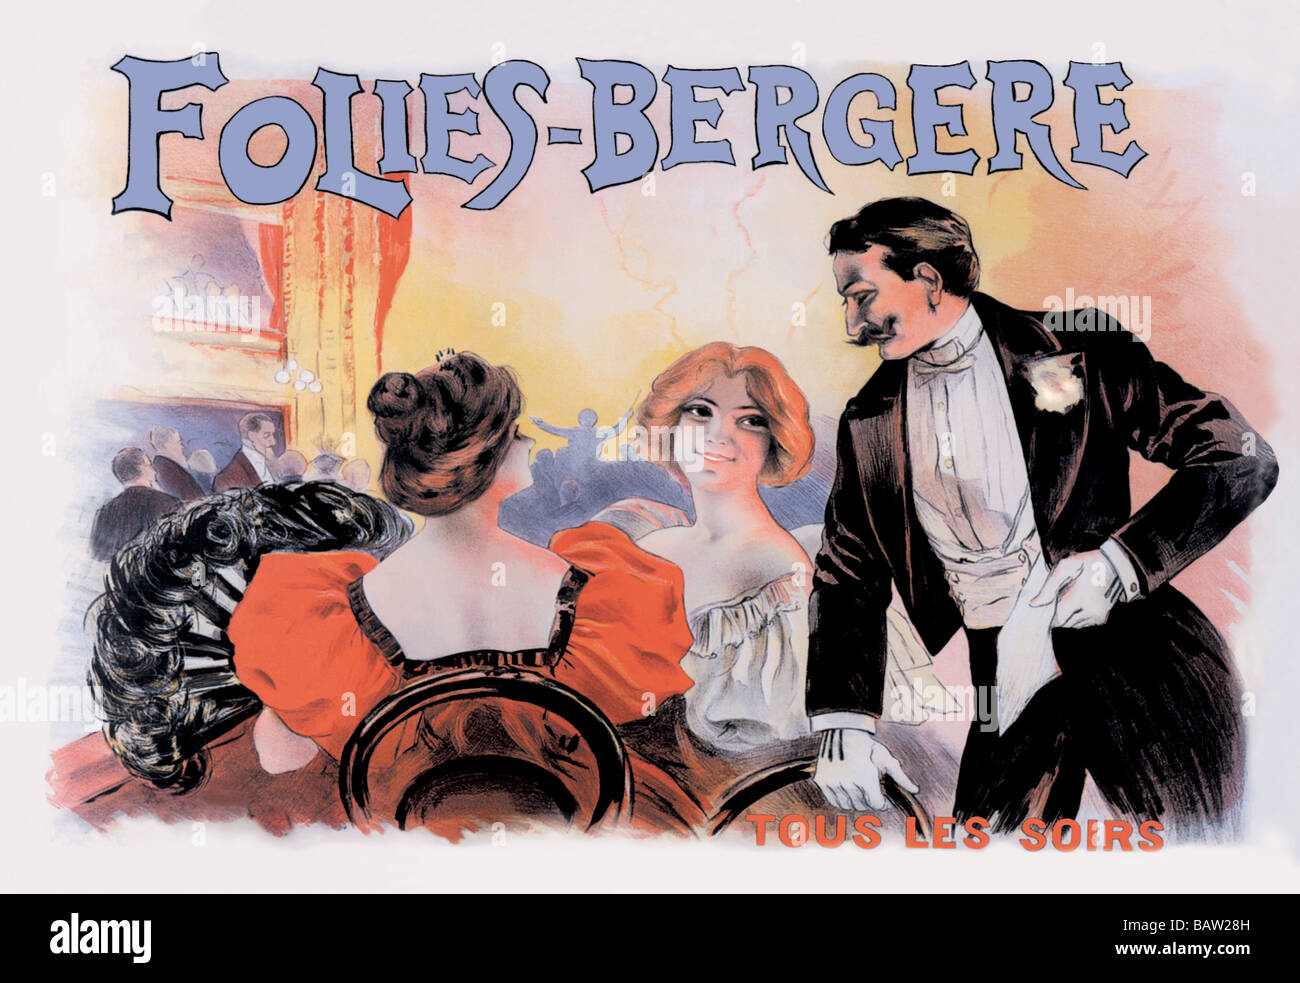 Tous les Soirs Folies-Bergere: Foto de stock